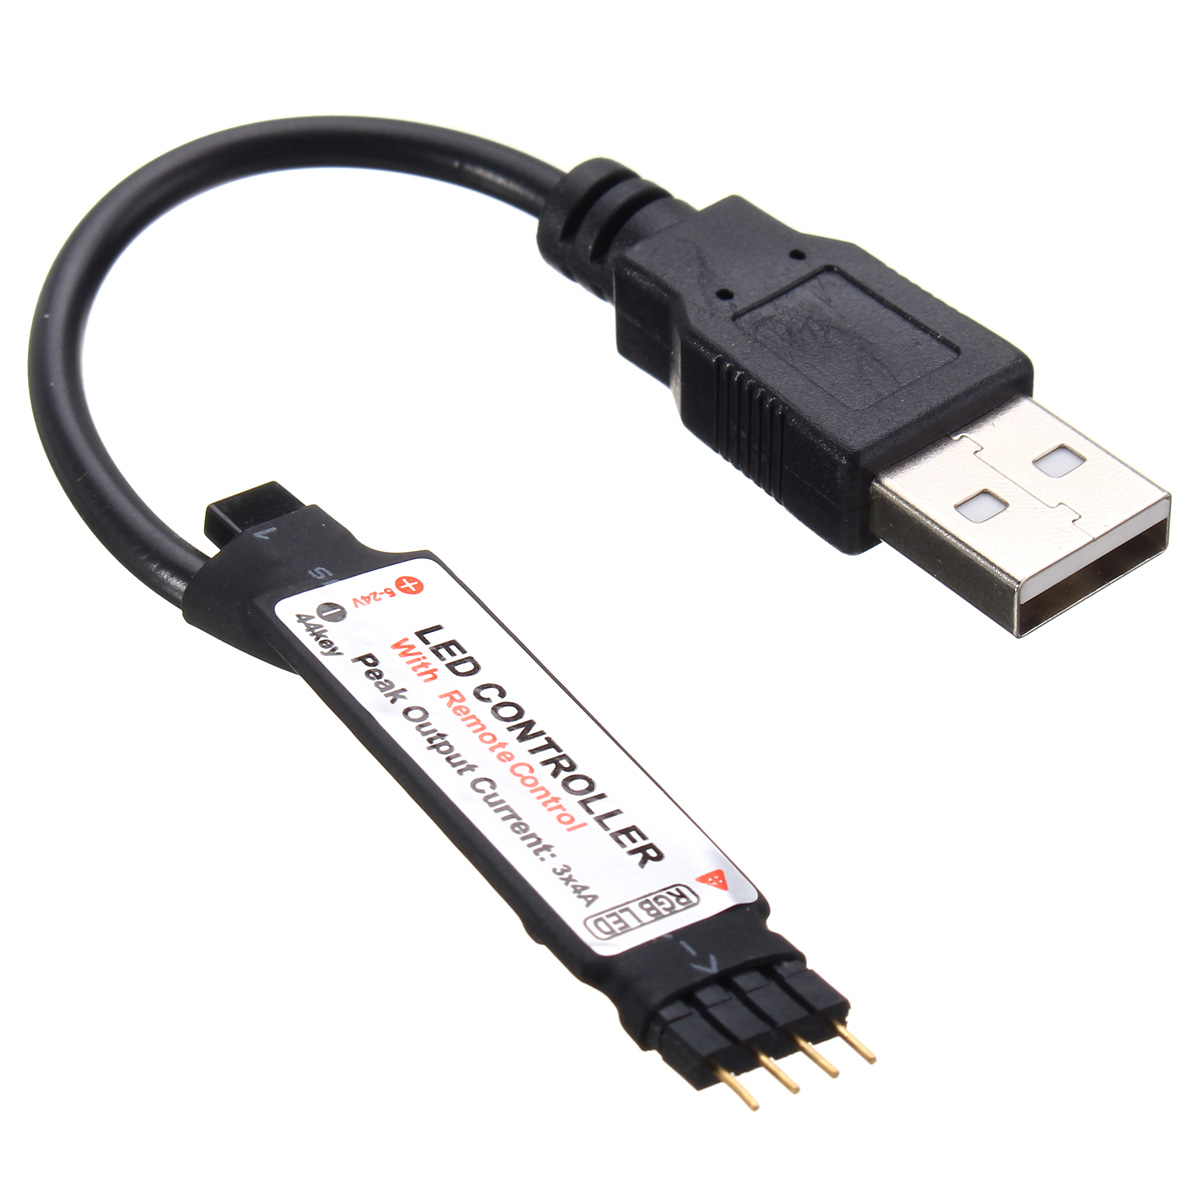 12v 5v usb. USB RGB контроллер dc5v. 5v USB Controller SND. RGB конвертер 12v 5v. Переходник РГБ юсб.